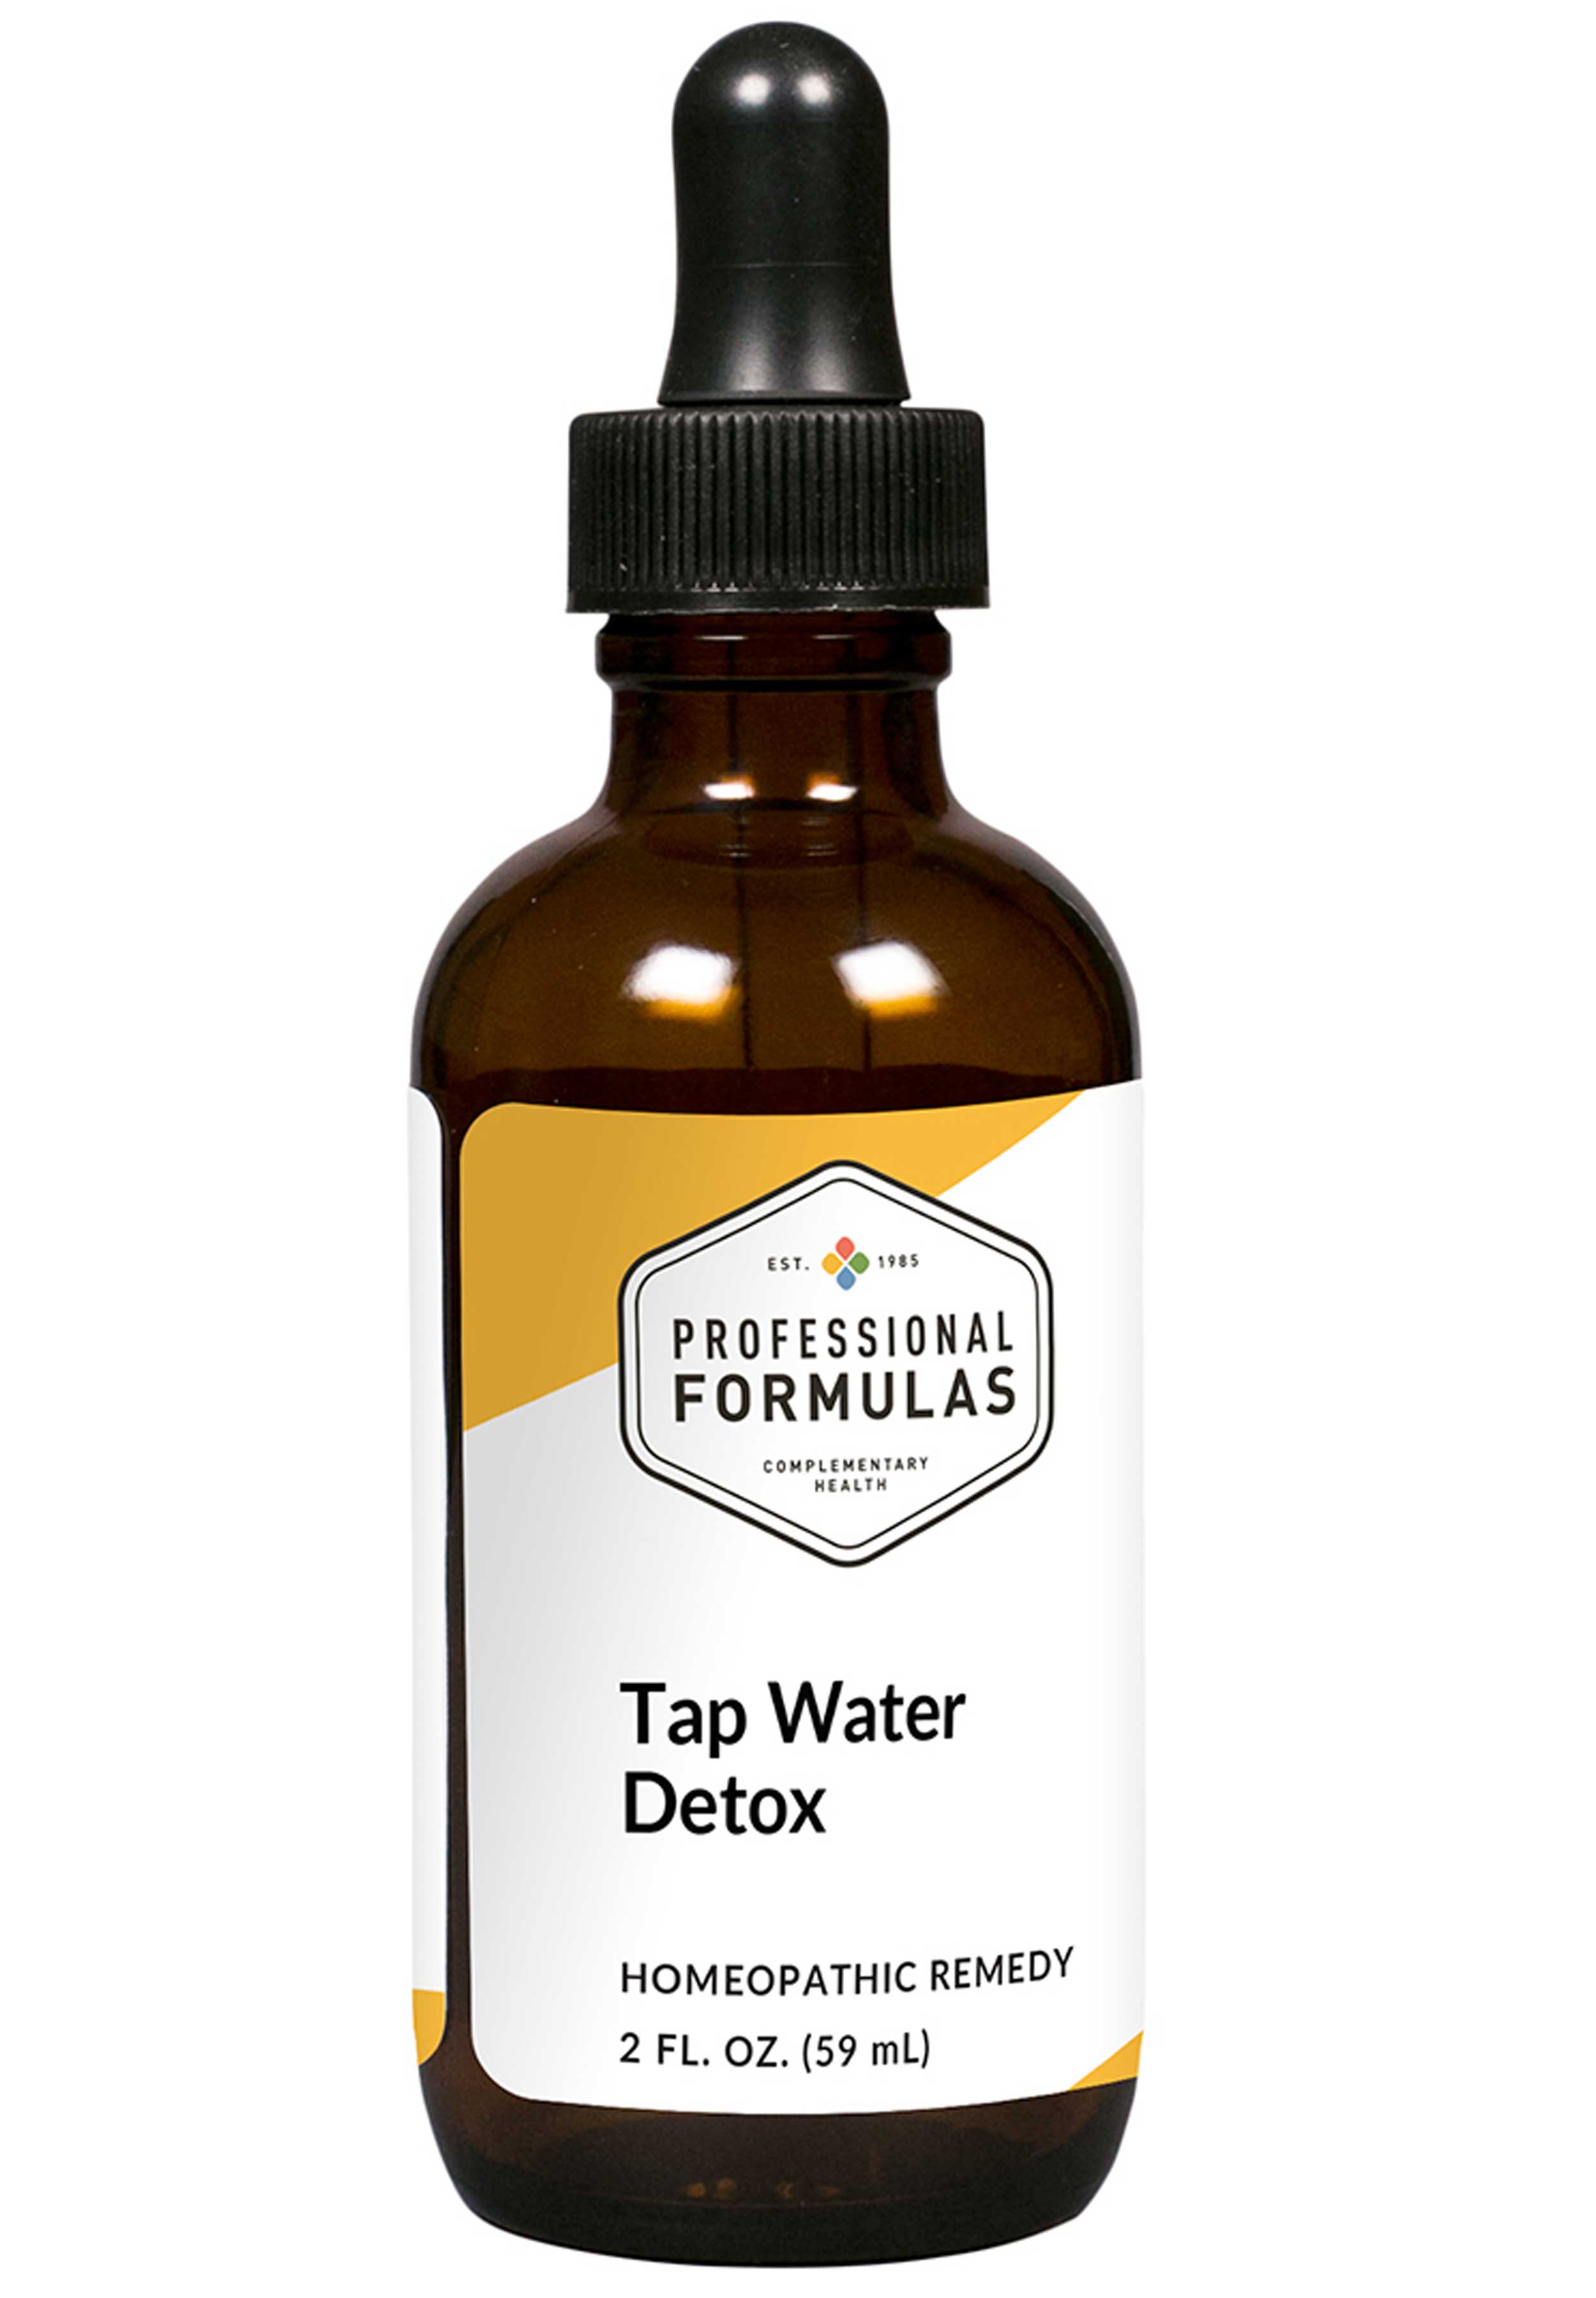 Professional Formulas Tap Water Detox